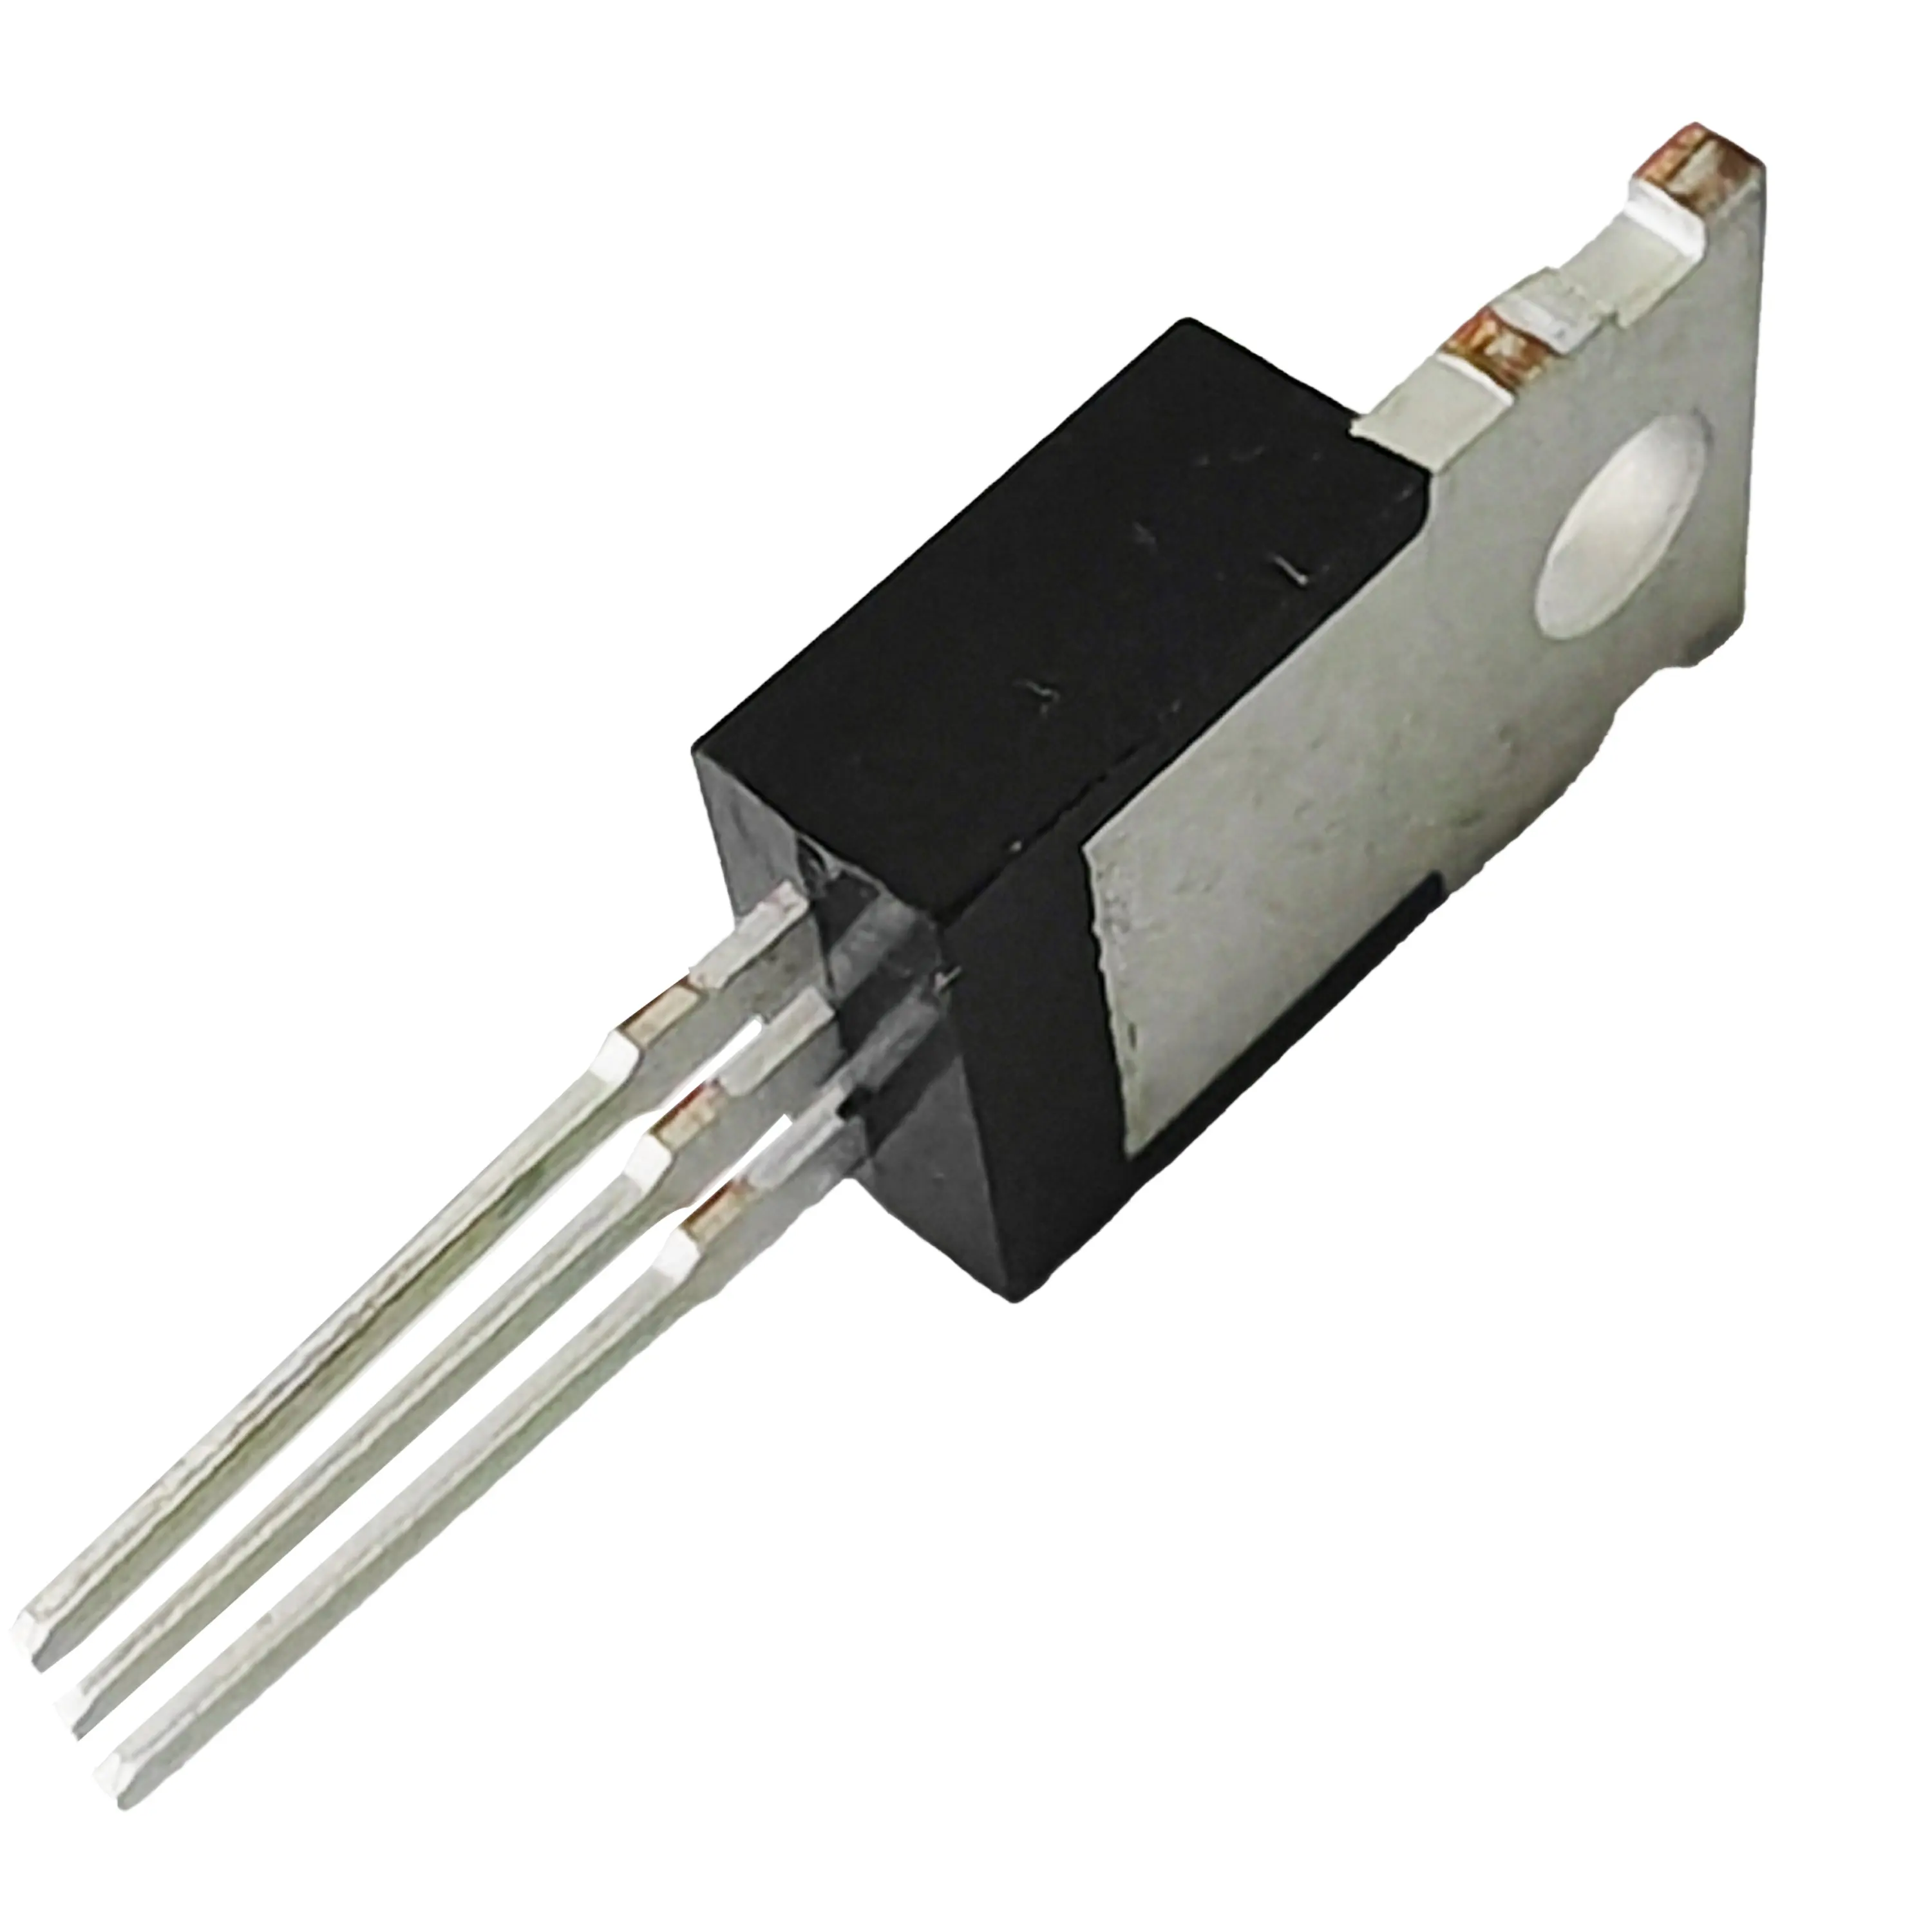 8A 800V MOSFET modalità di miglioramento del canale N di potenza pacchetto a 220 del Transistor MOSFET per la correzione del fattore di potenza attiva